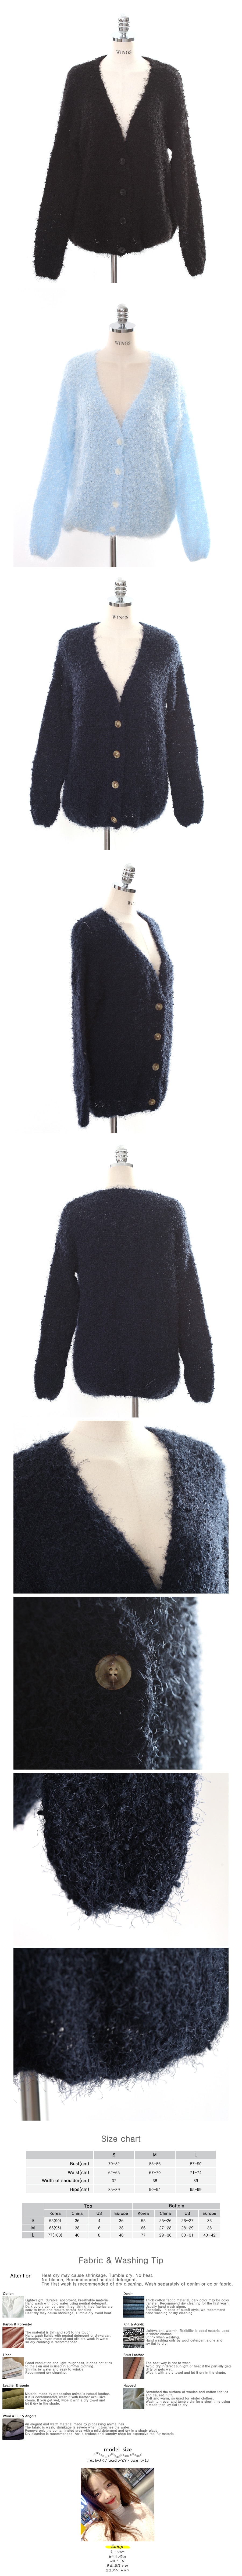 Fuzzy Knit Cardigan #Navy One Size(S-M)